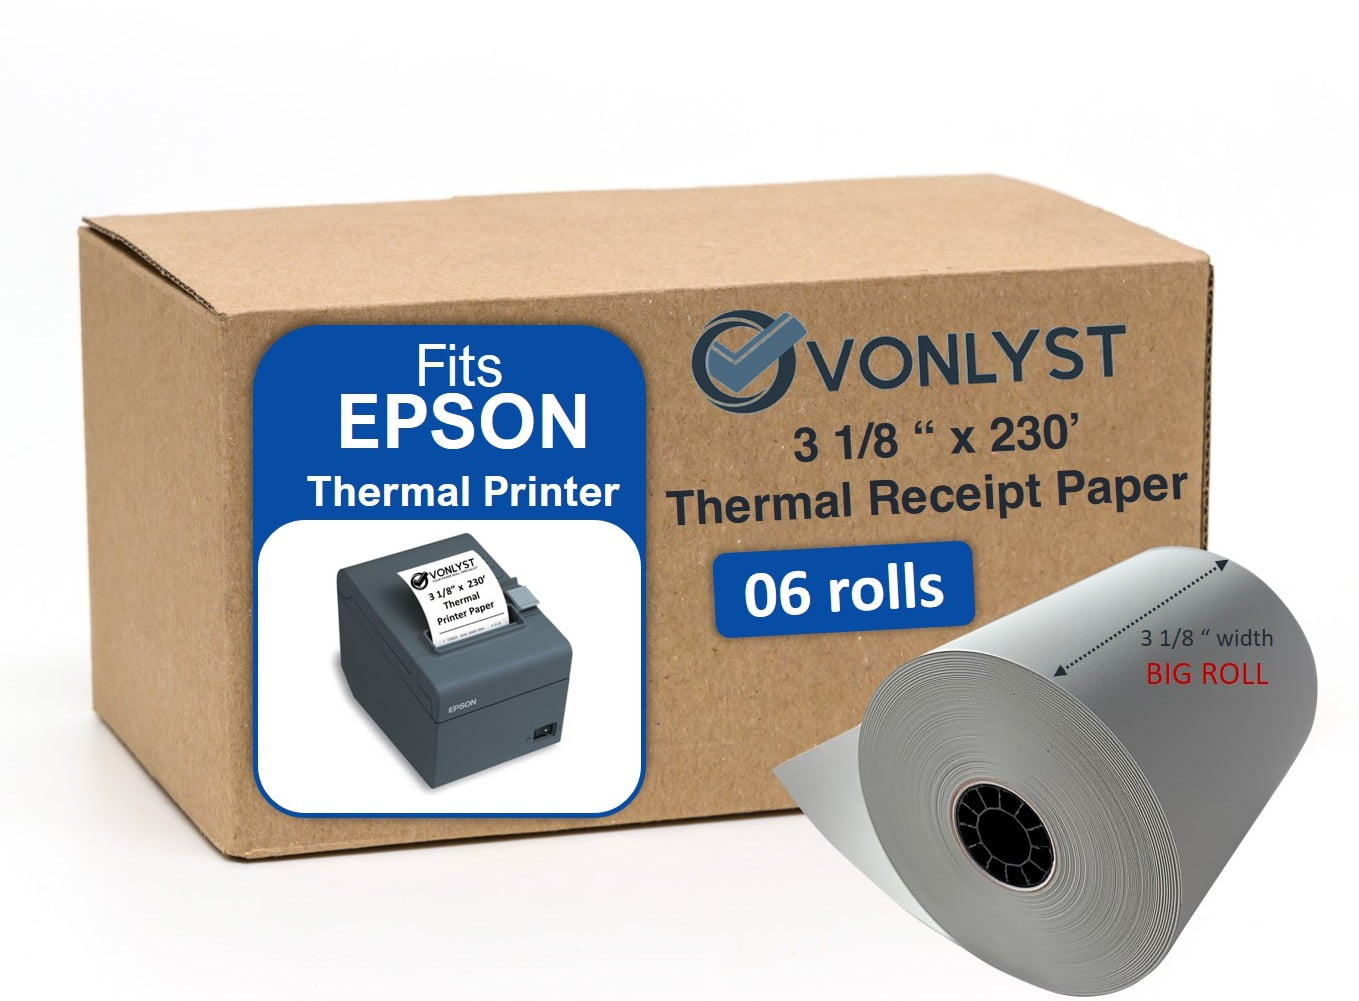 Vonlyst Receipt Paper 3 1/8 x 230 for Epson Thermal Printer 06